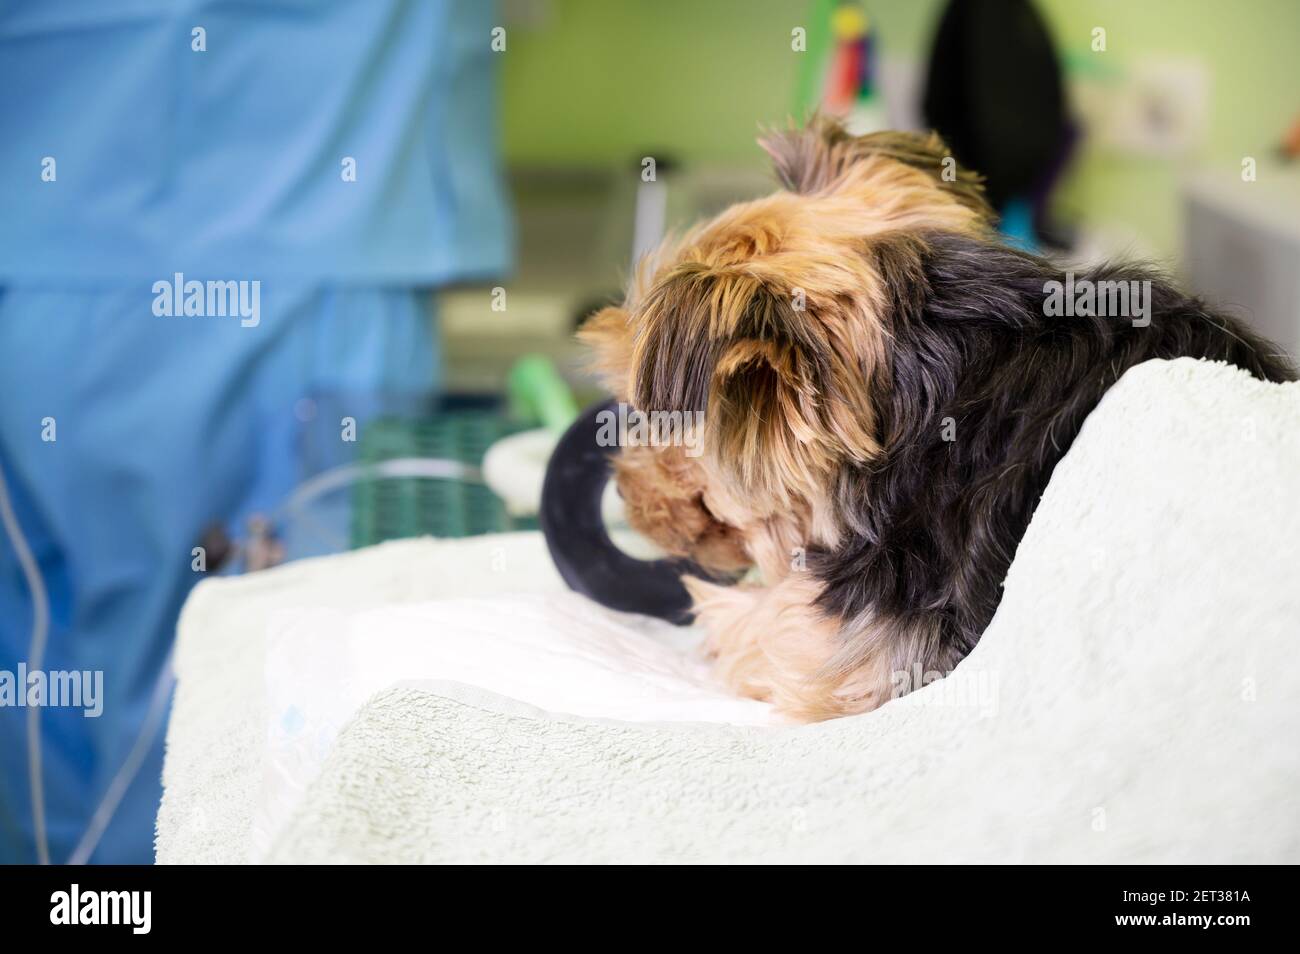 Tecnica di preossigenazione nel cane con maschera di ossigeno. Veterinario medico prepara il cane per l'anestesia. Foto di alta qualità Foto Stock